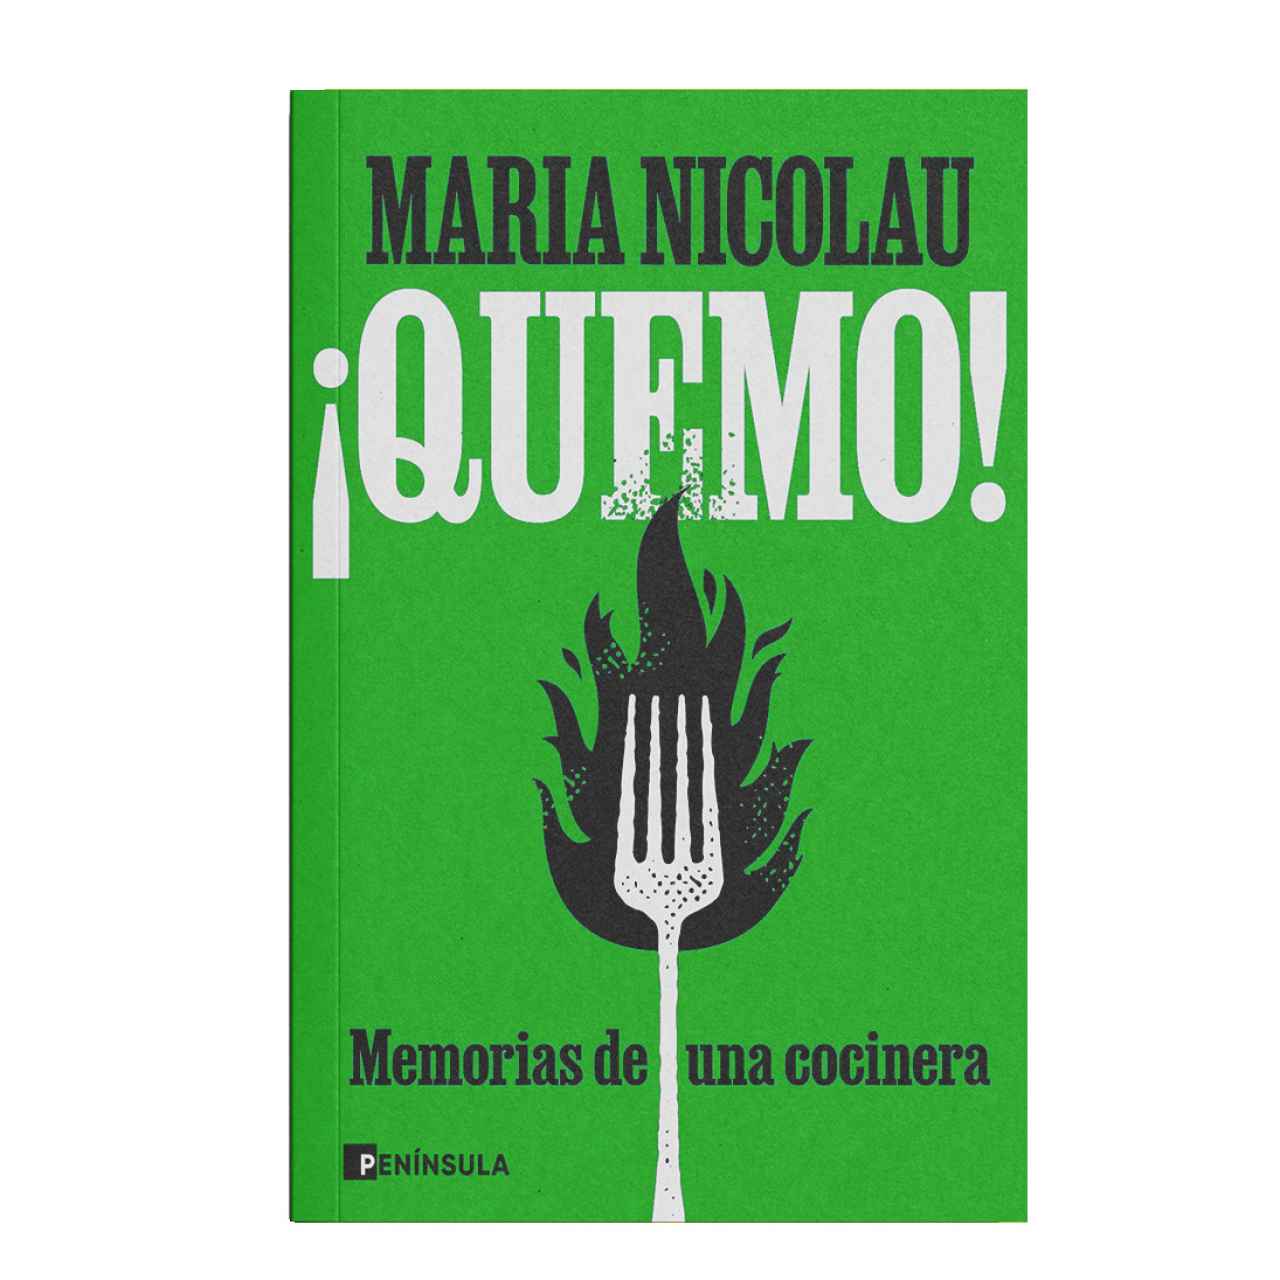 El nuevo libro de María Nicolau.